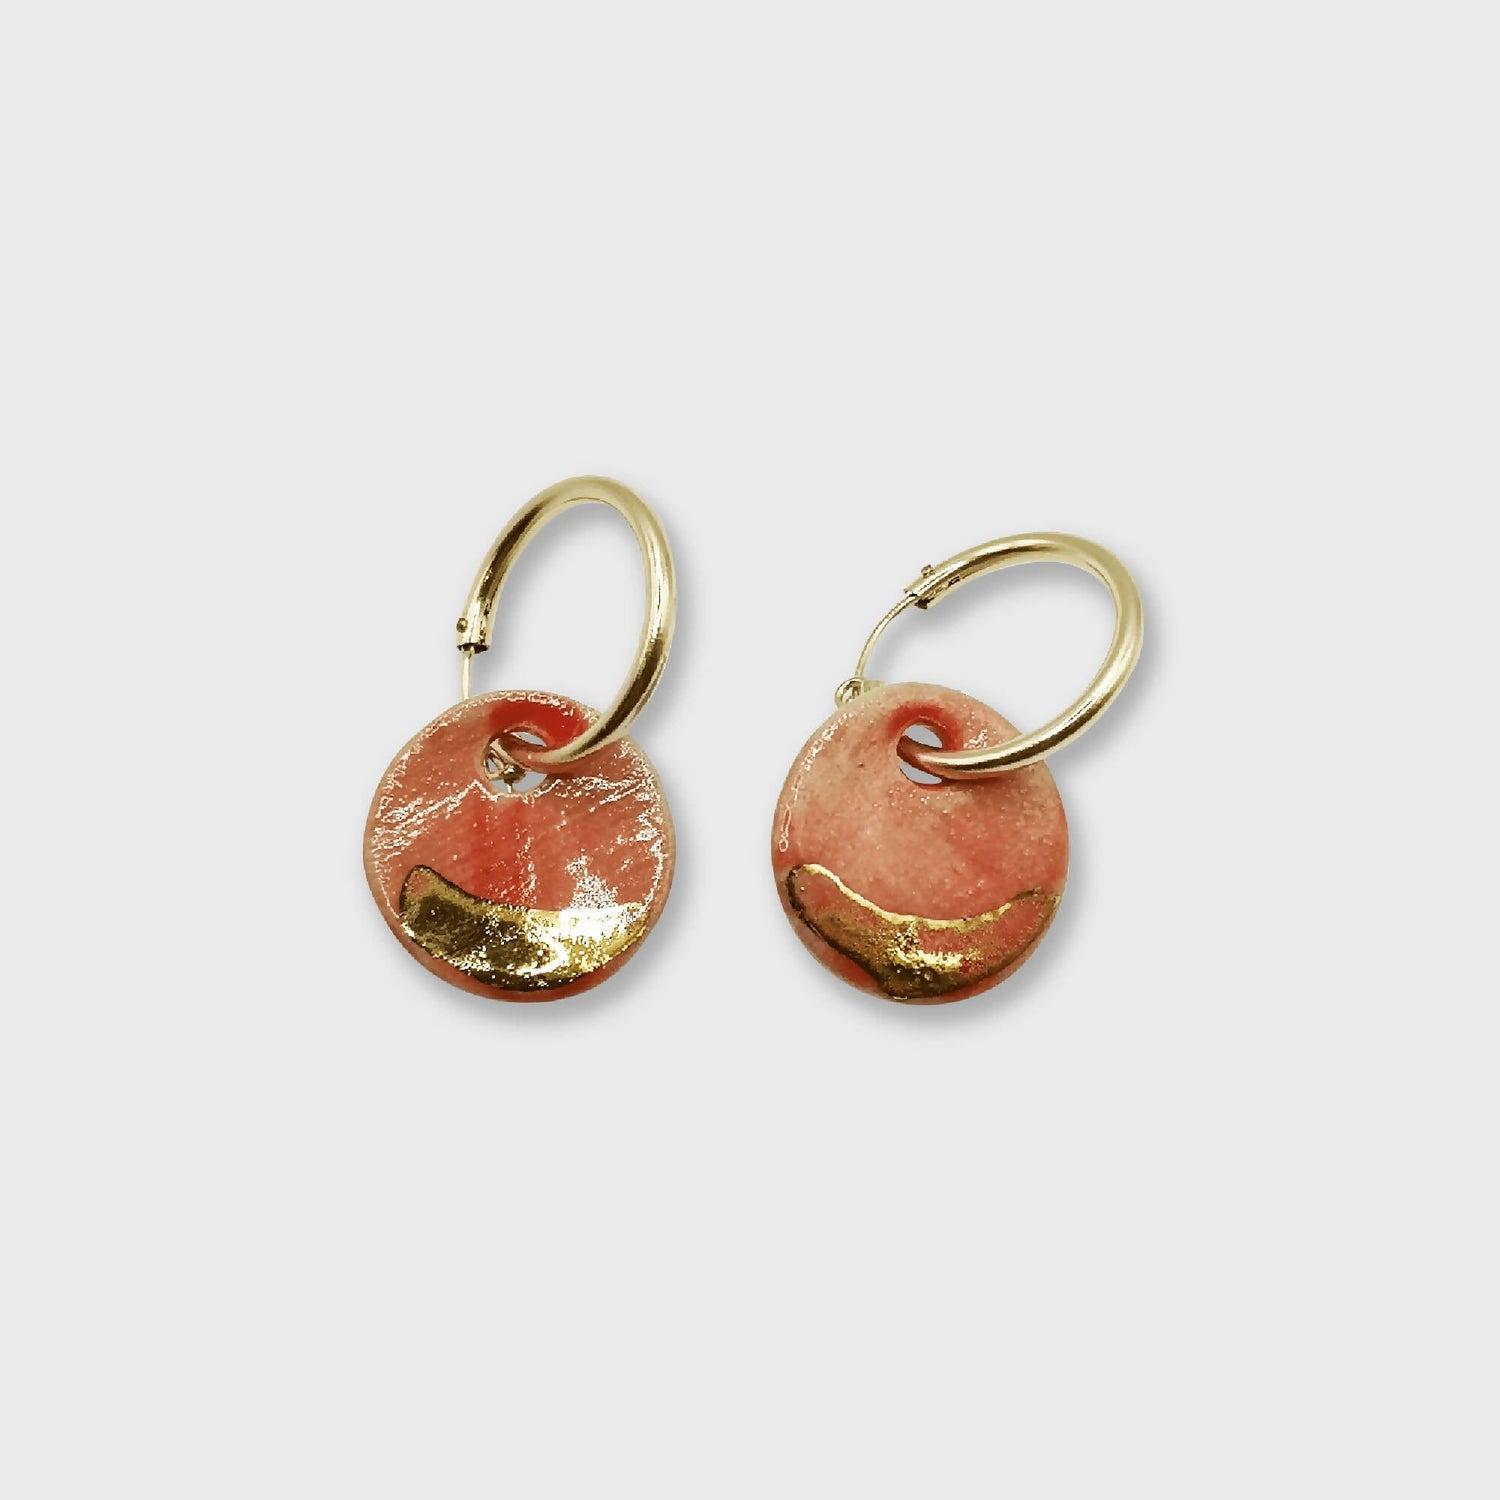 Boucles d'oreilles rouges corail pour femme elegante made in Provence France